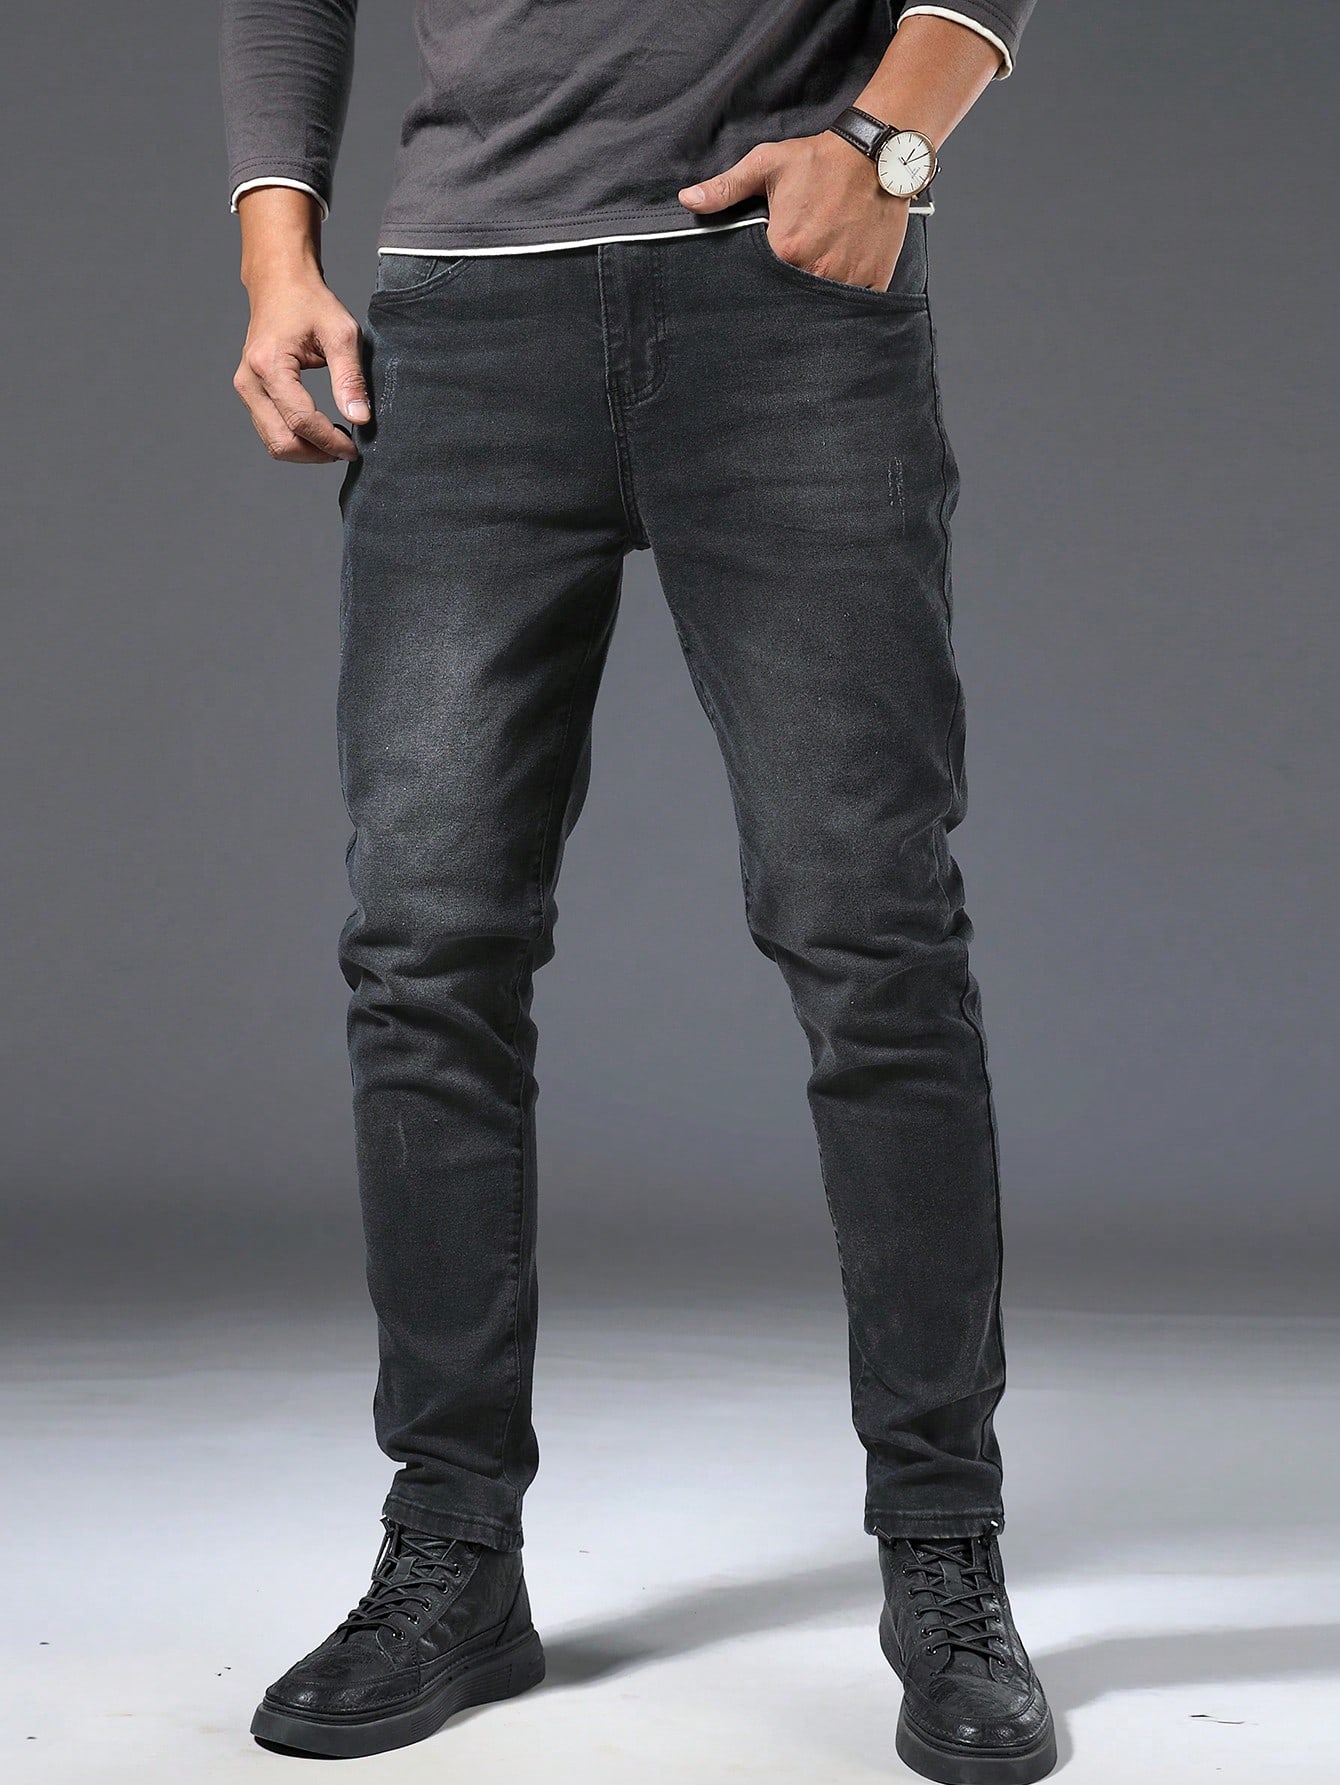 Мужские джинсы больших размеров Manfinity Homme, темно-серый